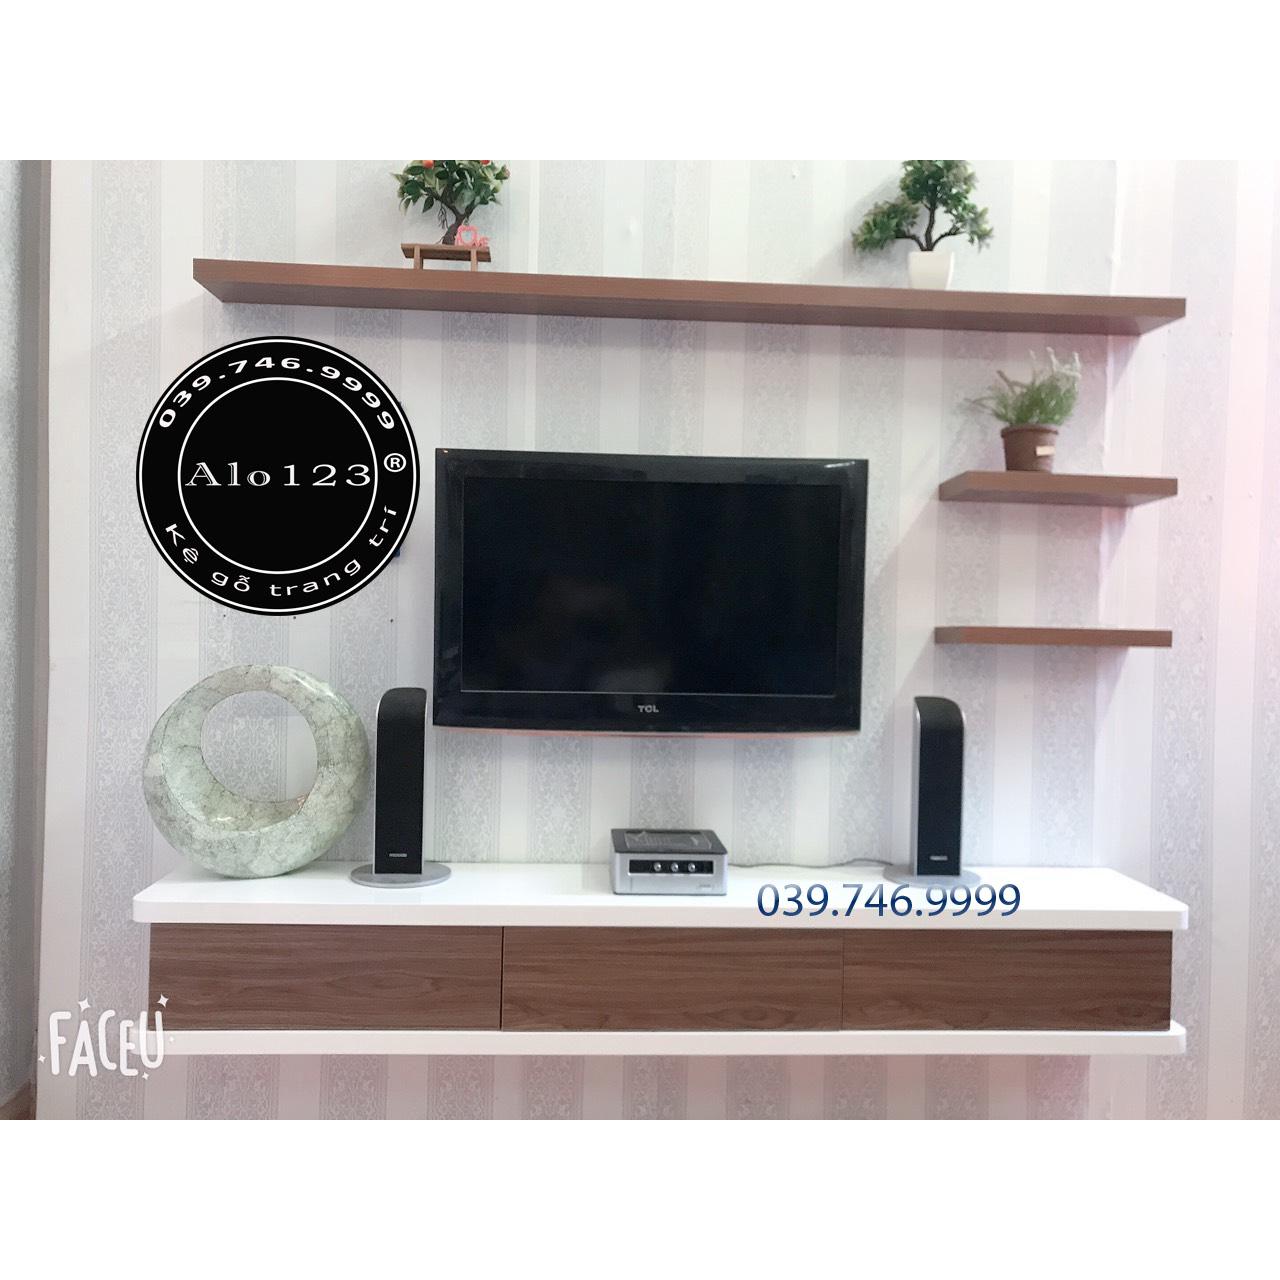 Nếu bạn đang tìm kiếm một sản phẩm kệ TV treo tường vừa đẹp vừa chất lượng, hãy xem qua hình ảnh kệ TV treo tường gỗ nhựa. Với vẻ ngoài đẹp mắt và chất liệu bền chắc, kệ TV treo tường gỗ nhựa sẽ là một lựa chọn tuyệt vời cho không gian phòng khách của bạn.